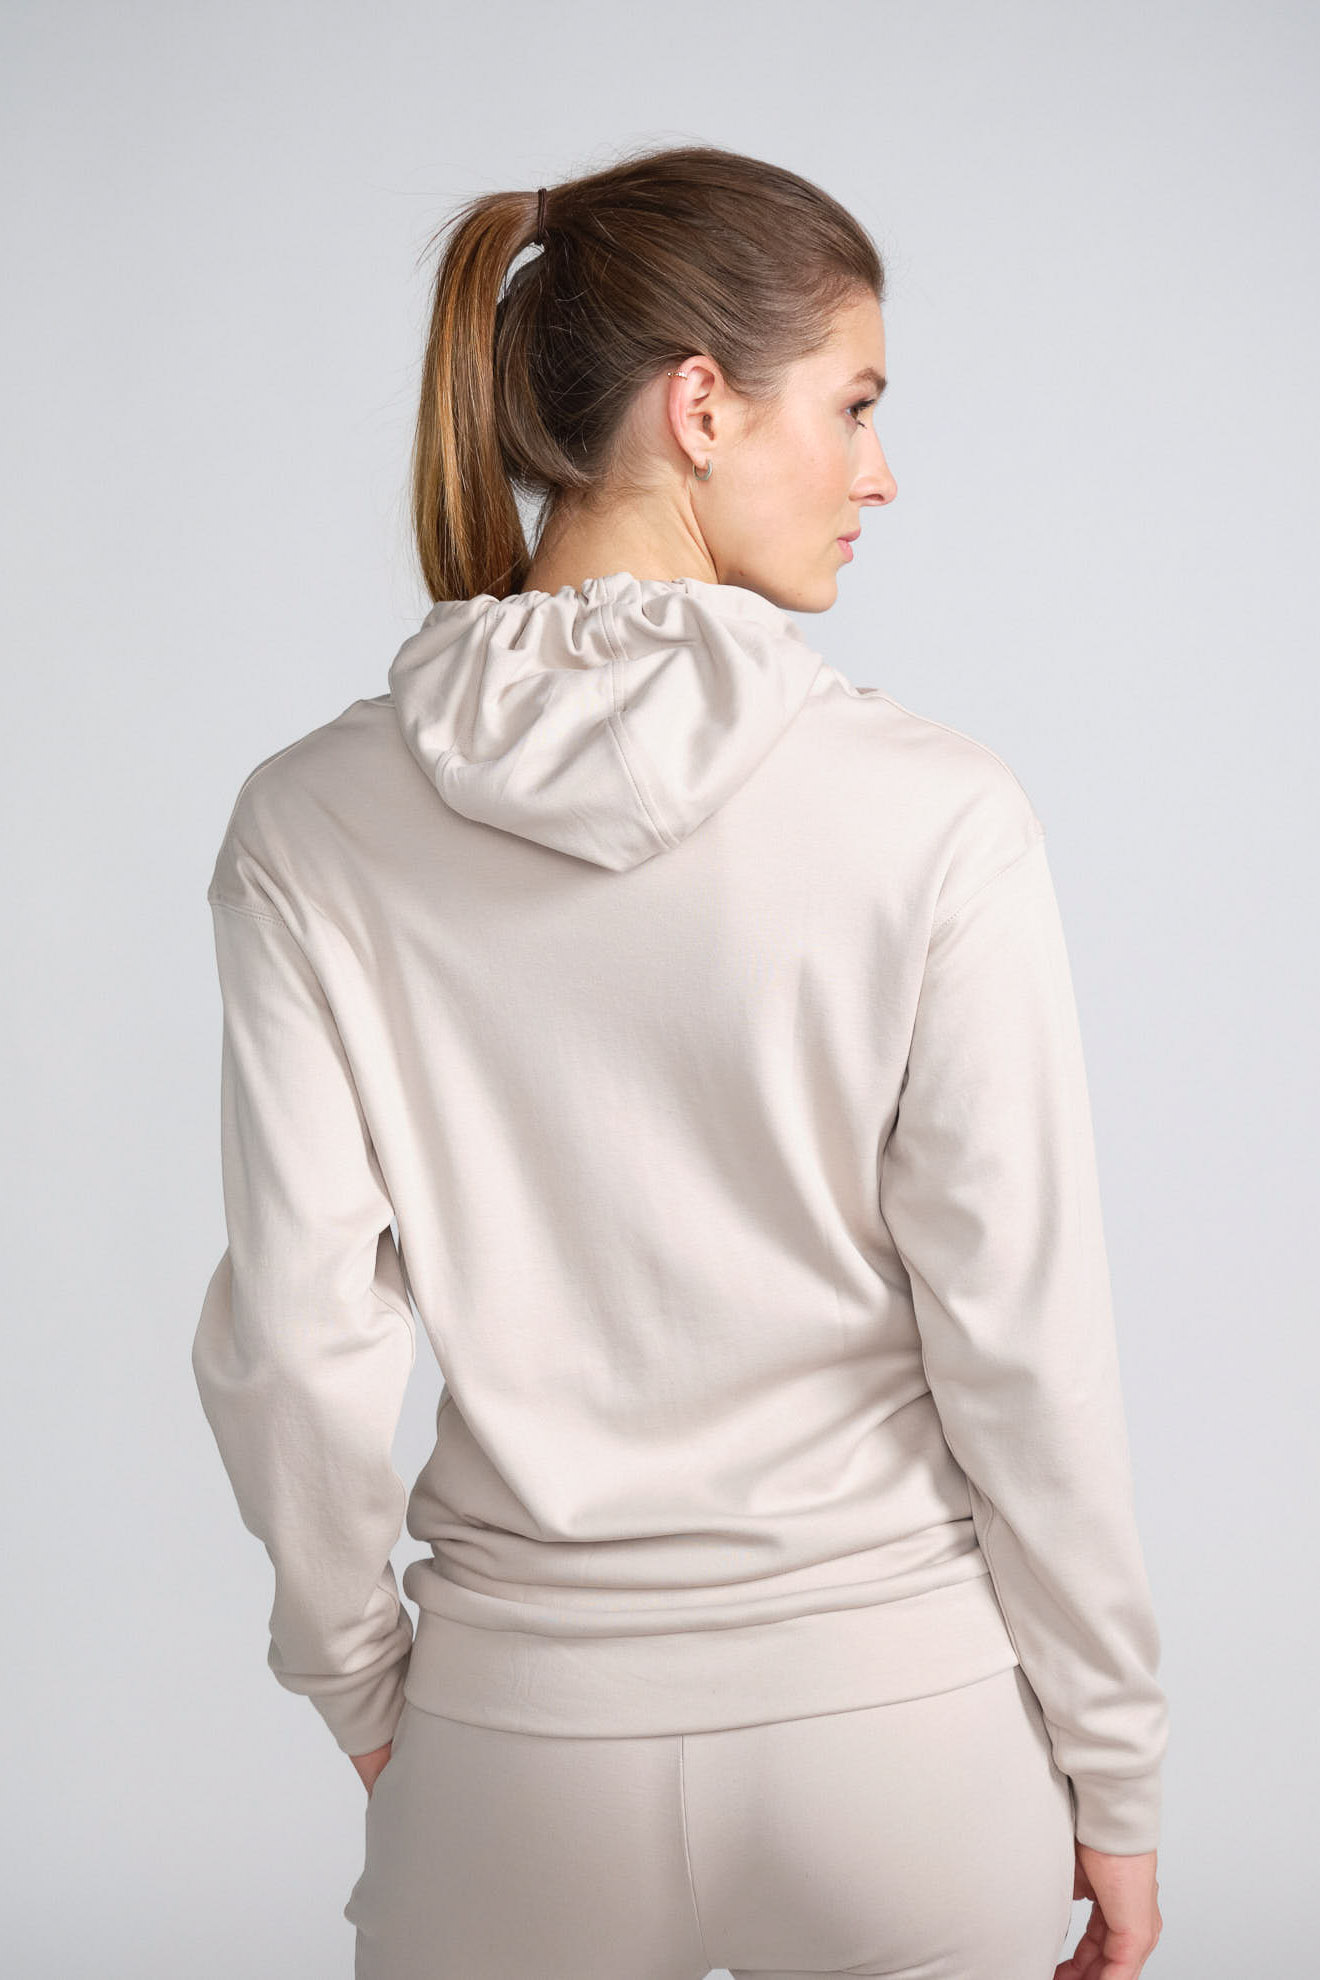 stefan brandt hoodie beige plain cotton model back